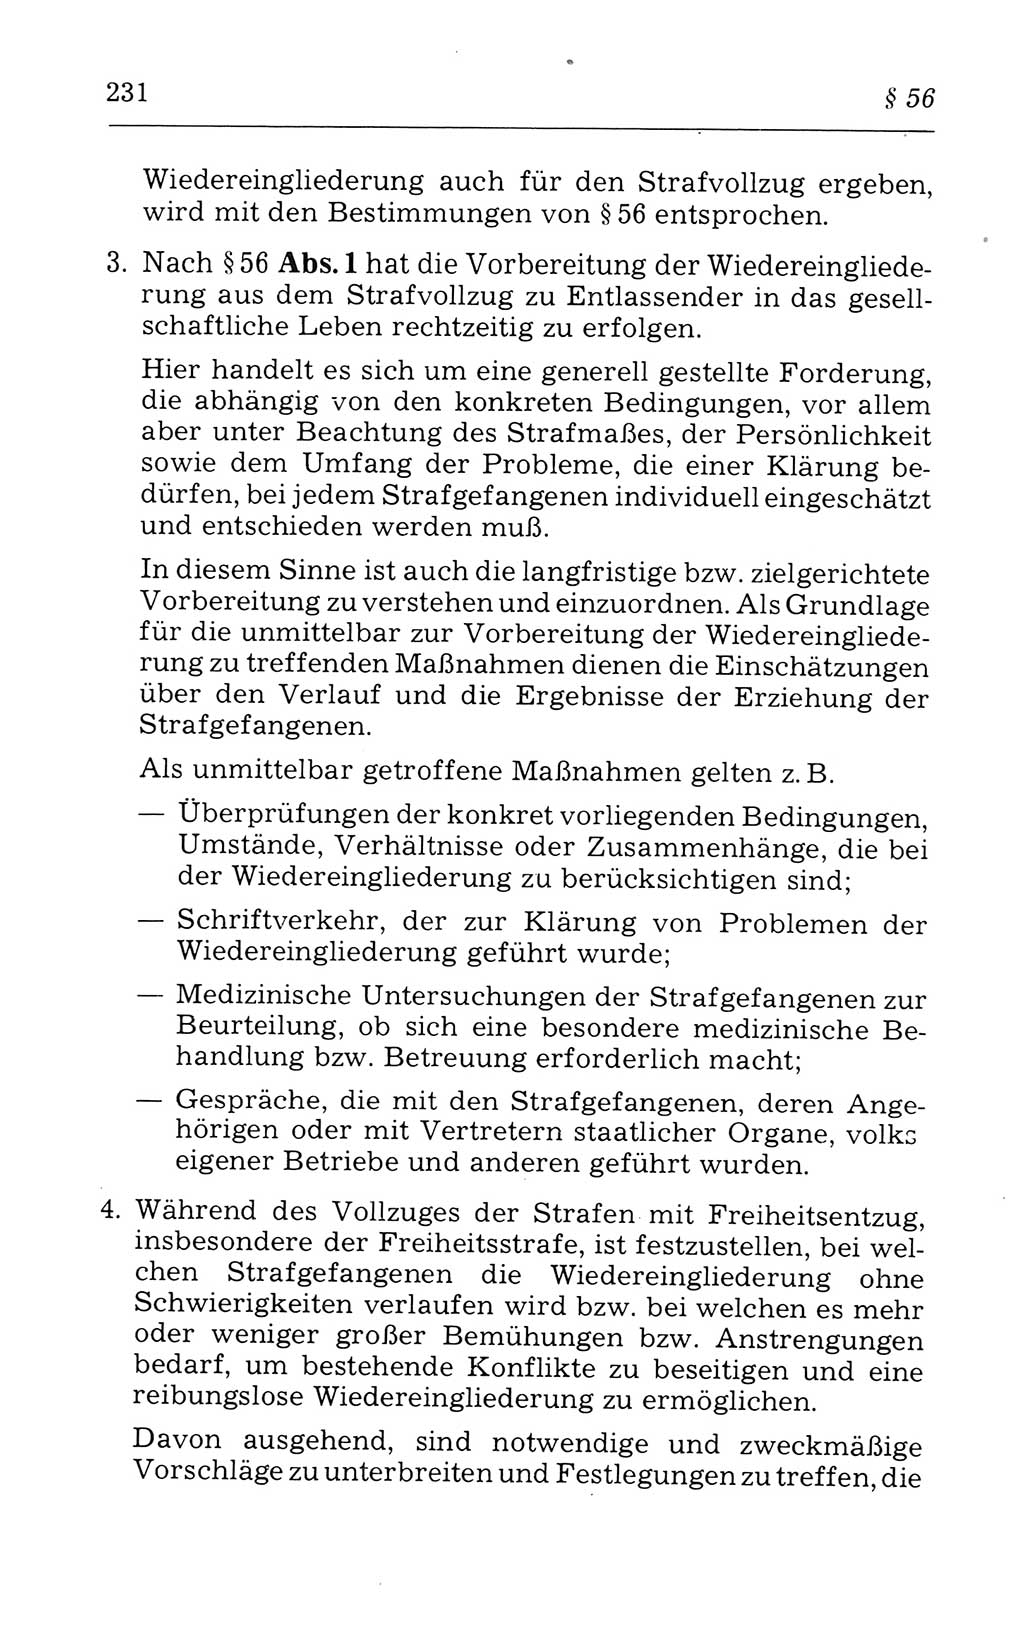 Kommentar zum Strafvollzugsgesetz [(StVG) Deutsche Demokratische Republik (DDR)] 1980, Seite 231 (Komm. StVG DDR 1980, S. 231)